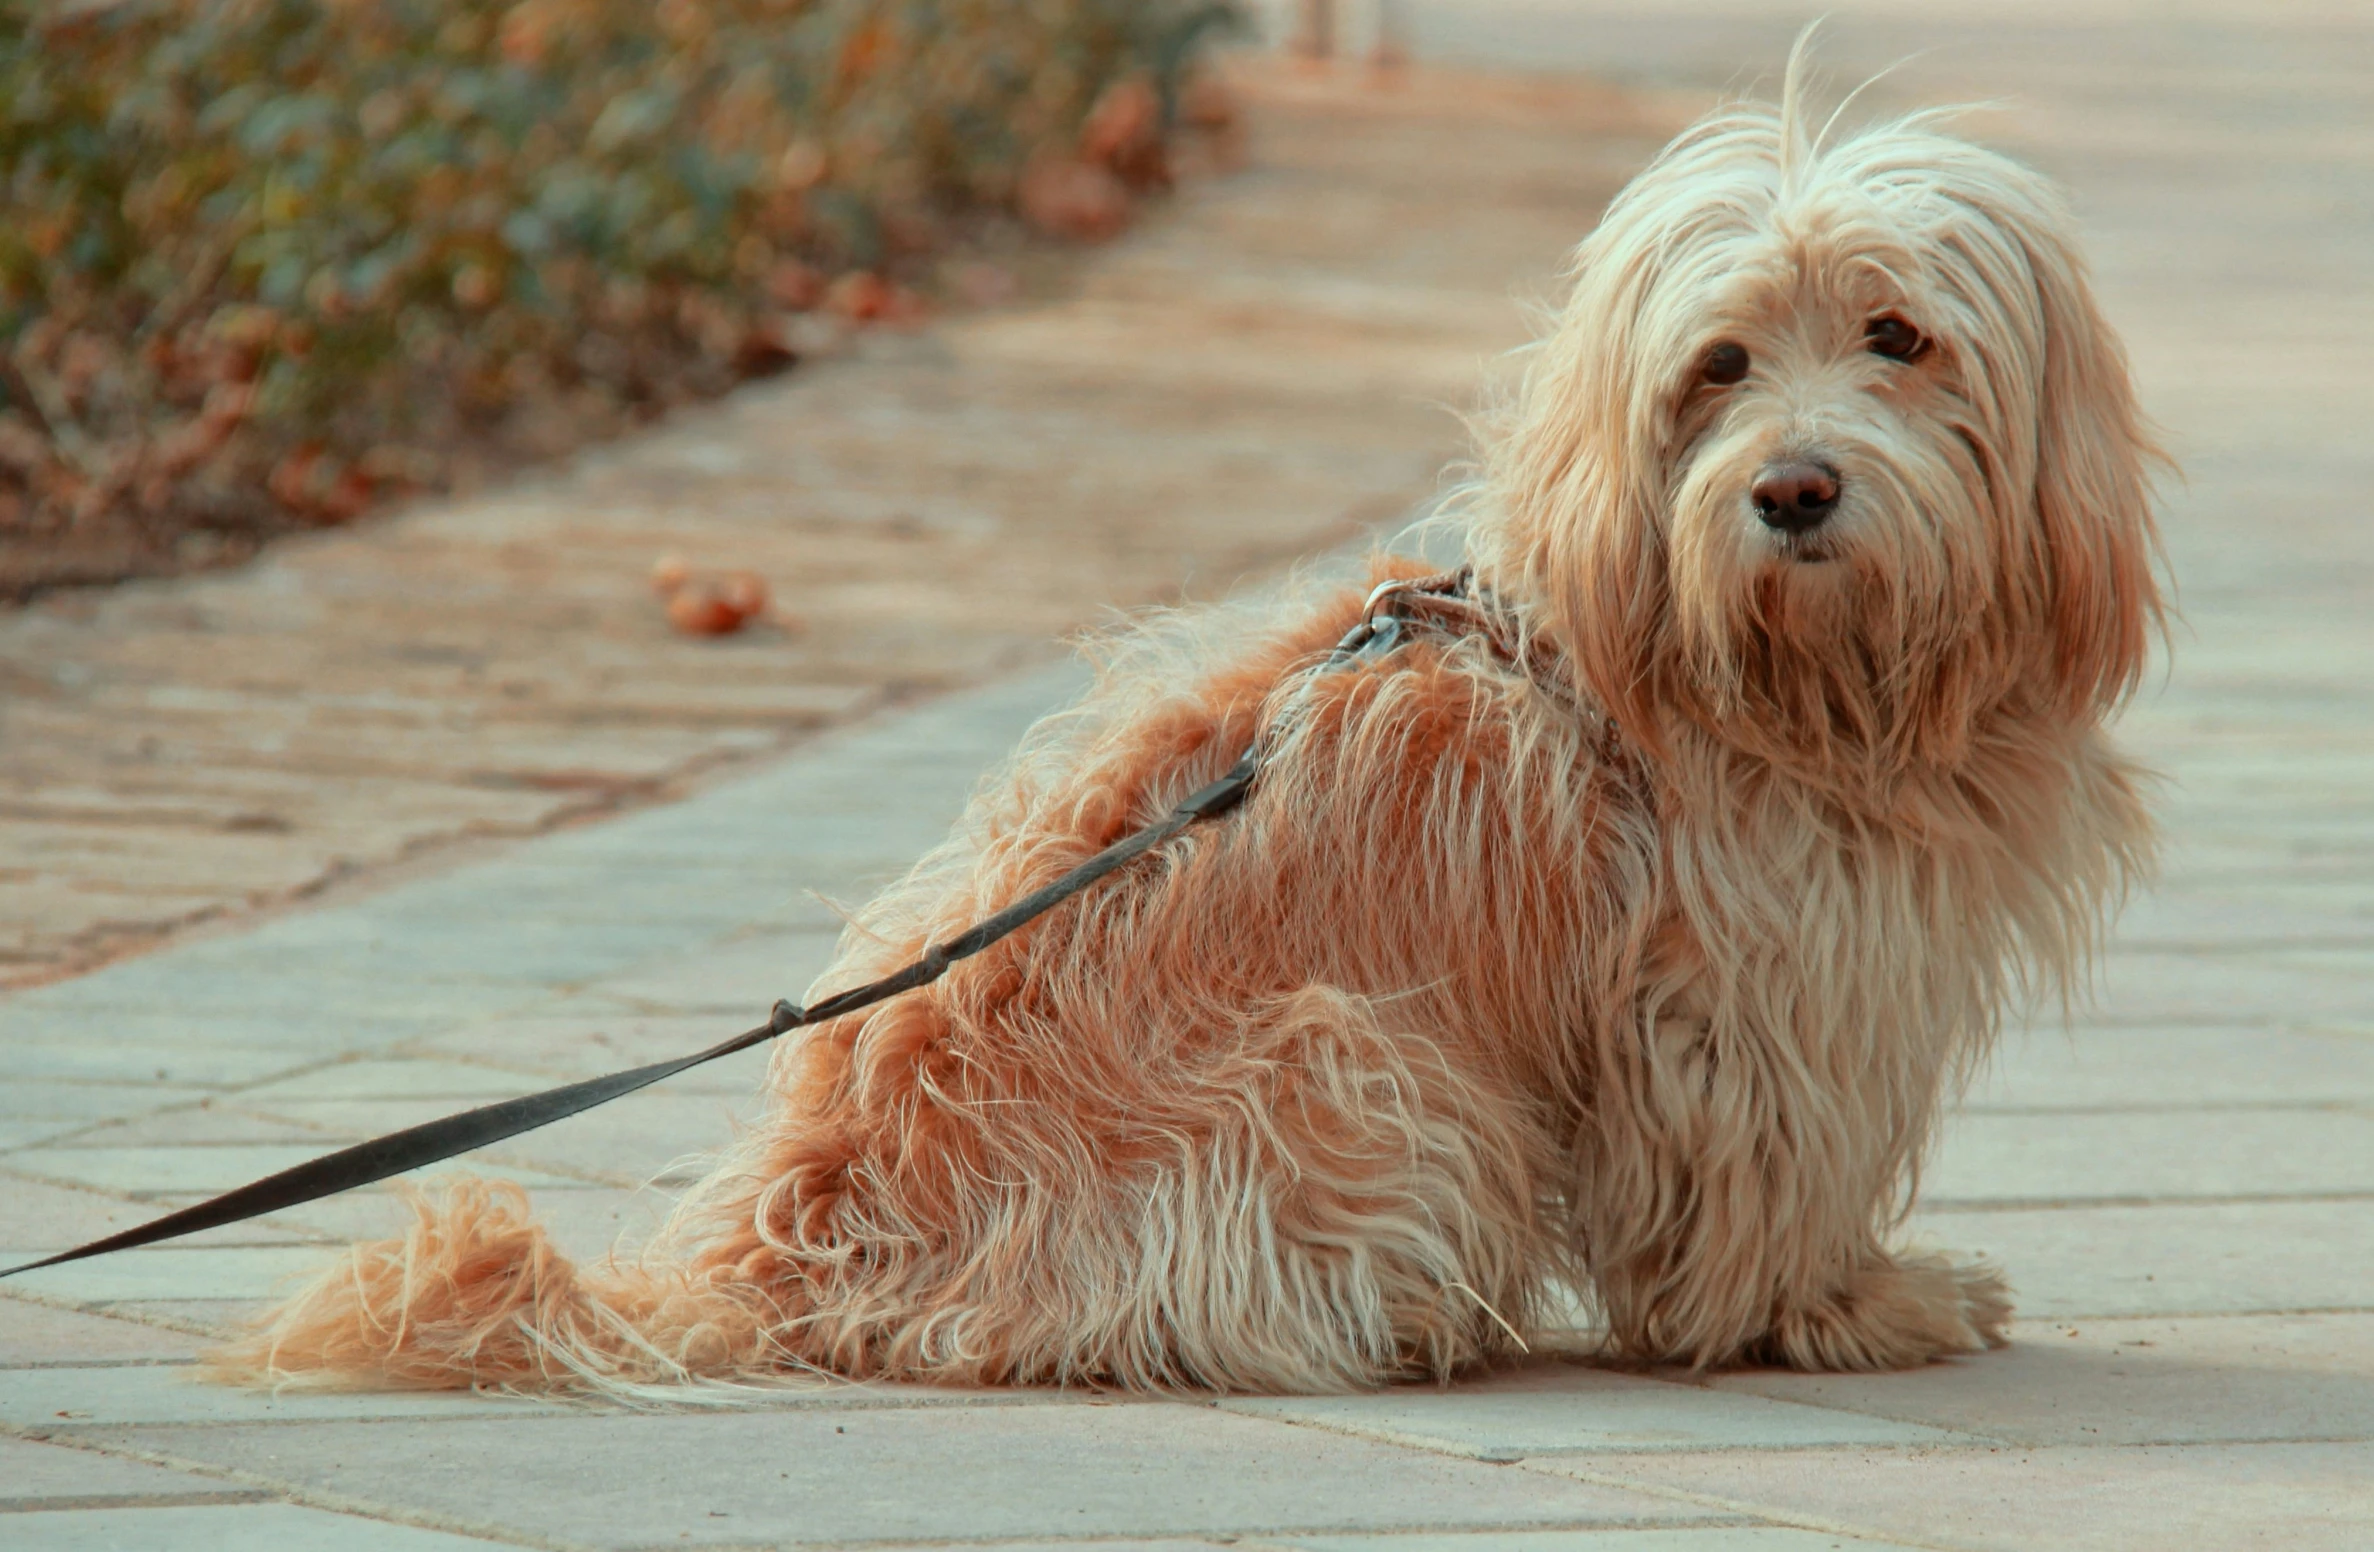 a gy brown dog on a leash on a sidewalk